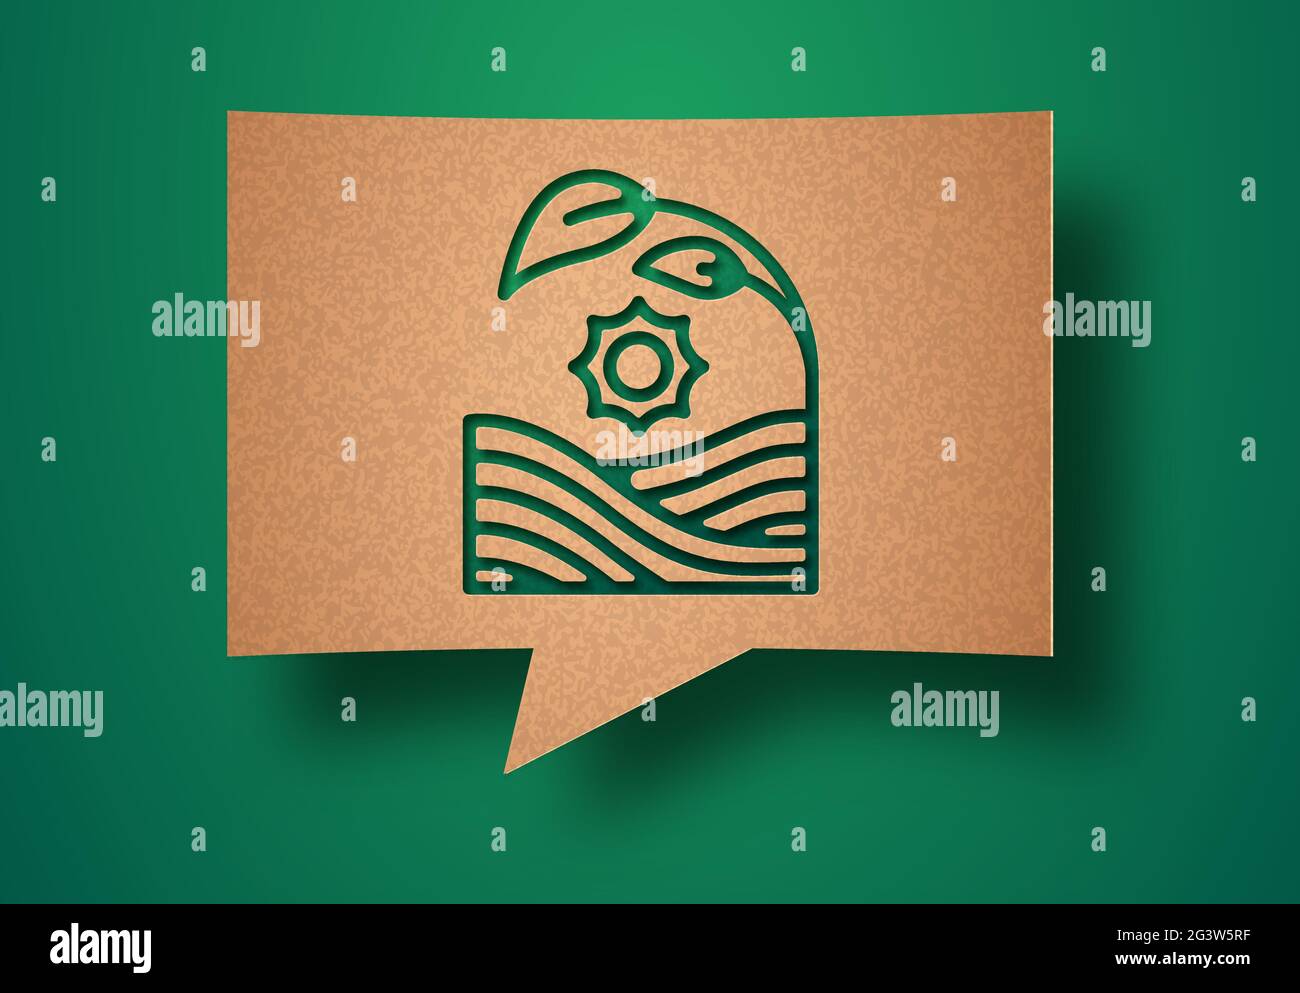 Umweltfreundliche Landwirtschaft Papierschnitt Illustration mit Farm Feld und Pflanzen Blatt Ernte. Bio-Lebensmittelproduktion oder Umweltkonzept. 3d-Ausschnitt in recy Stock Vektor